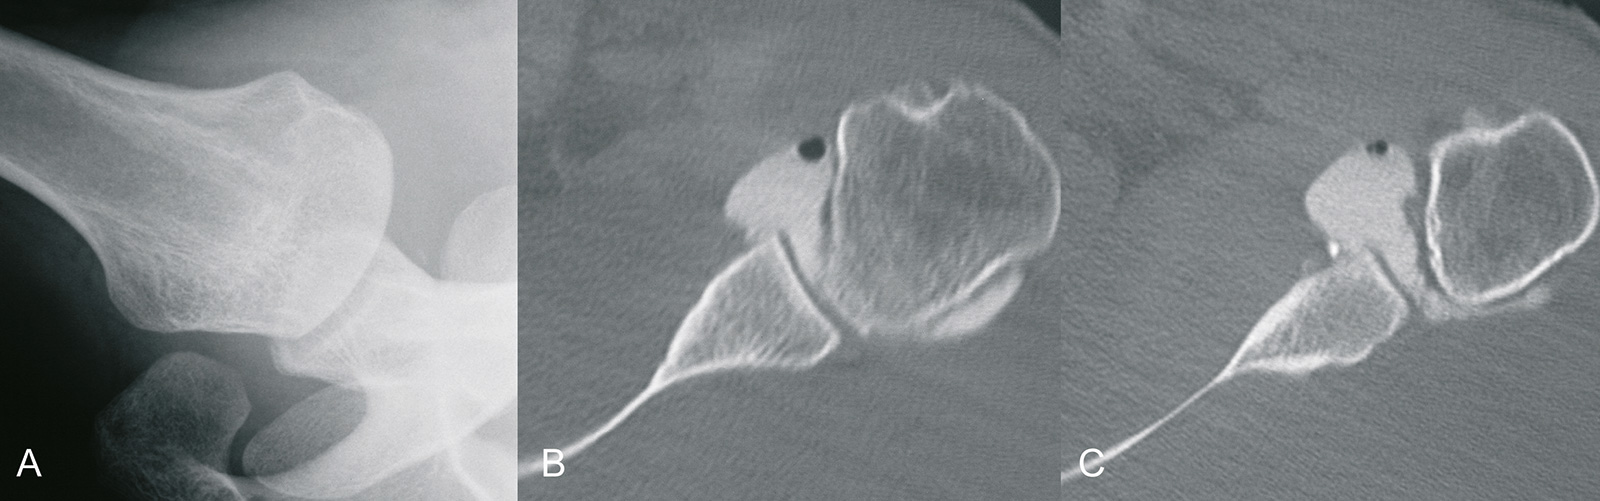 Abb. 2-28: Zustand nach rezidivierenden Schulterluxationen: natives Röntgenbild (A), die CT-Arthrografie (B,C) zeigt eine deutliche Weitung der Gelenkkapsel, sowie eine Verletzung des anterioren Labrums